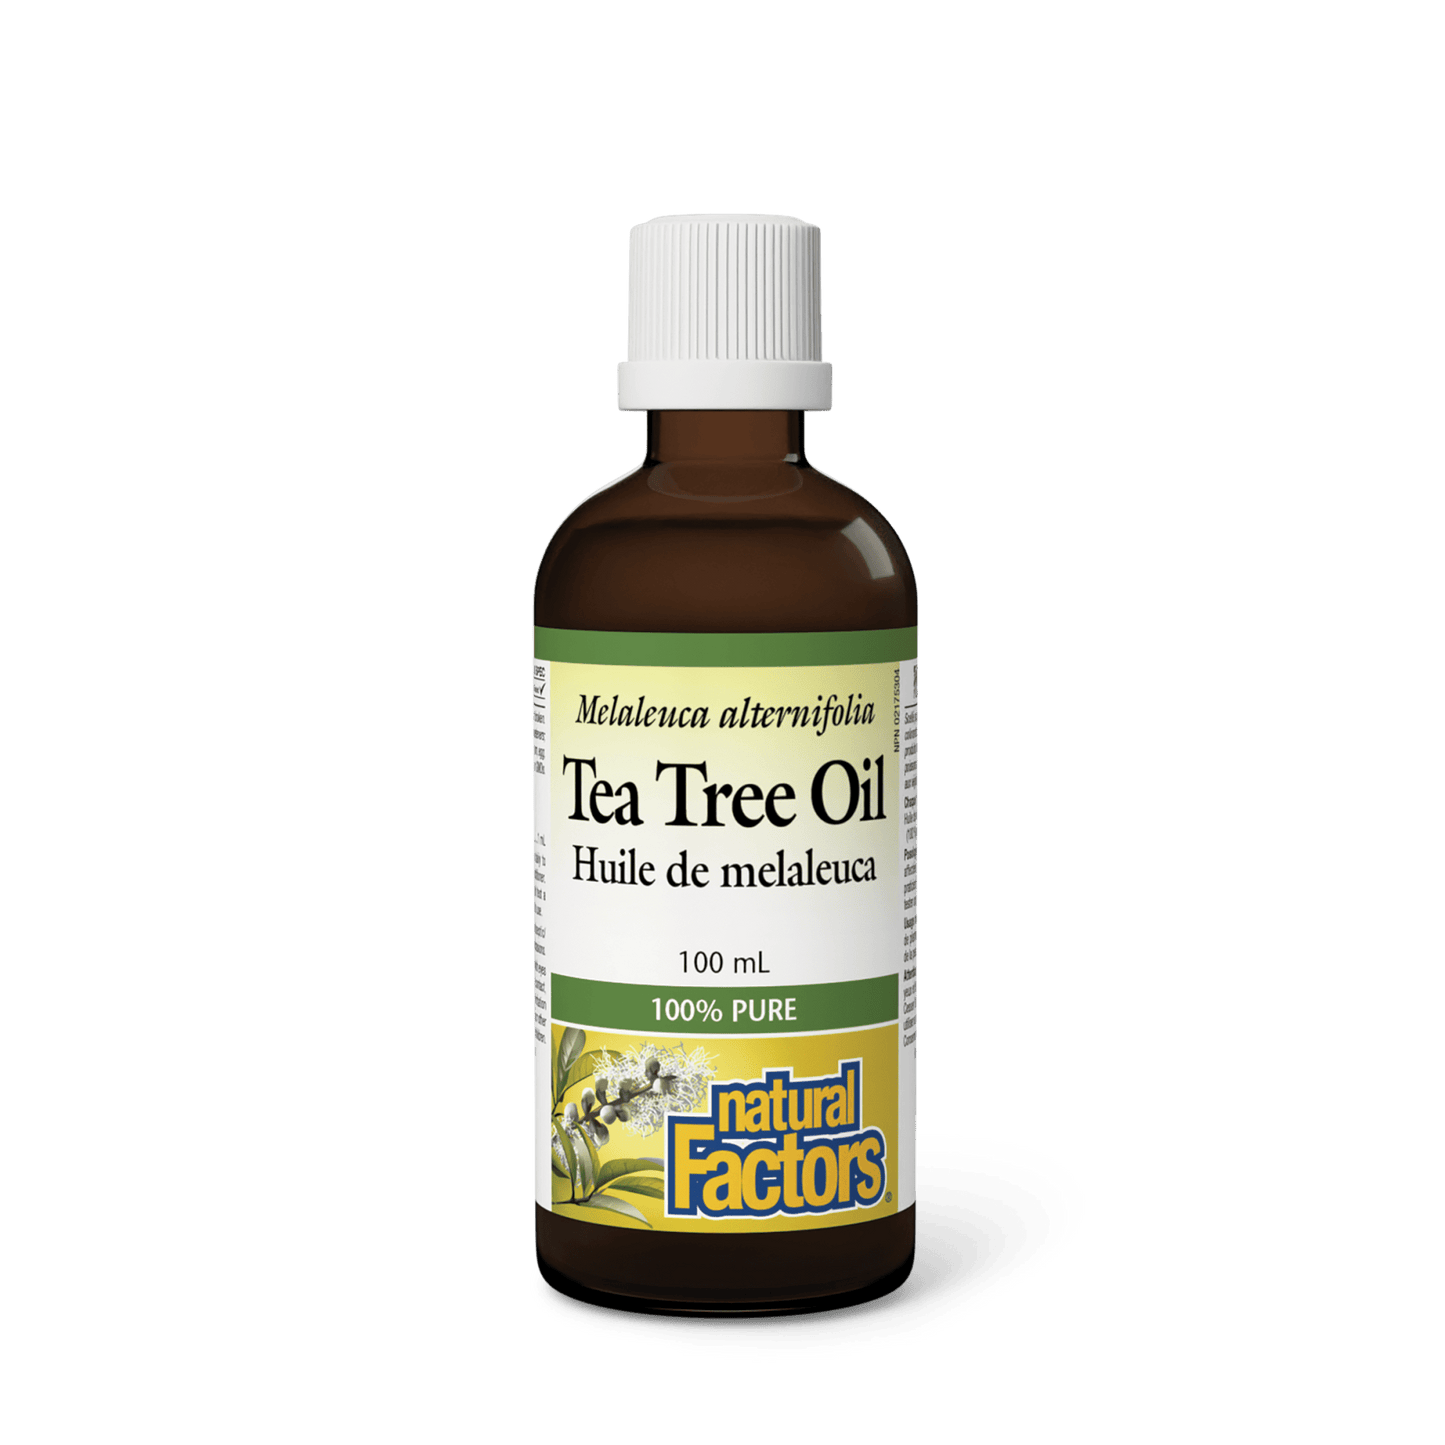 Tea Tree Oil, Natural Factors|v|image|4349